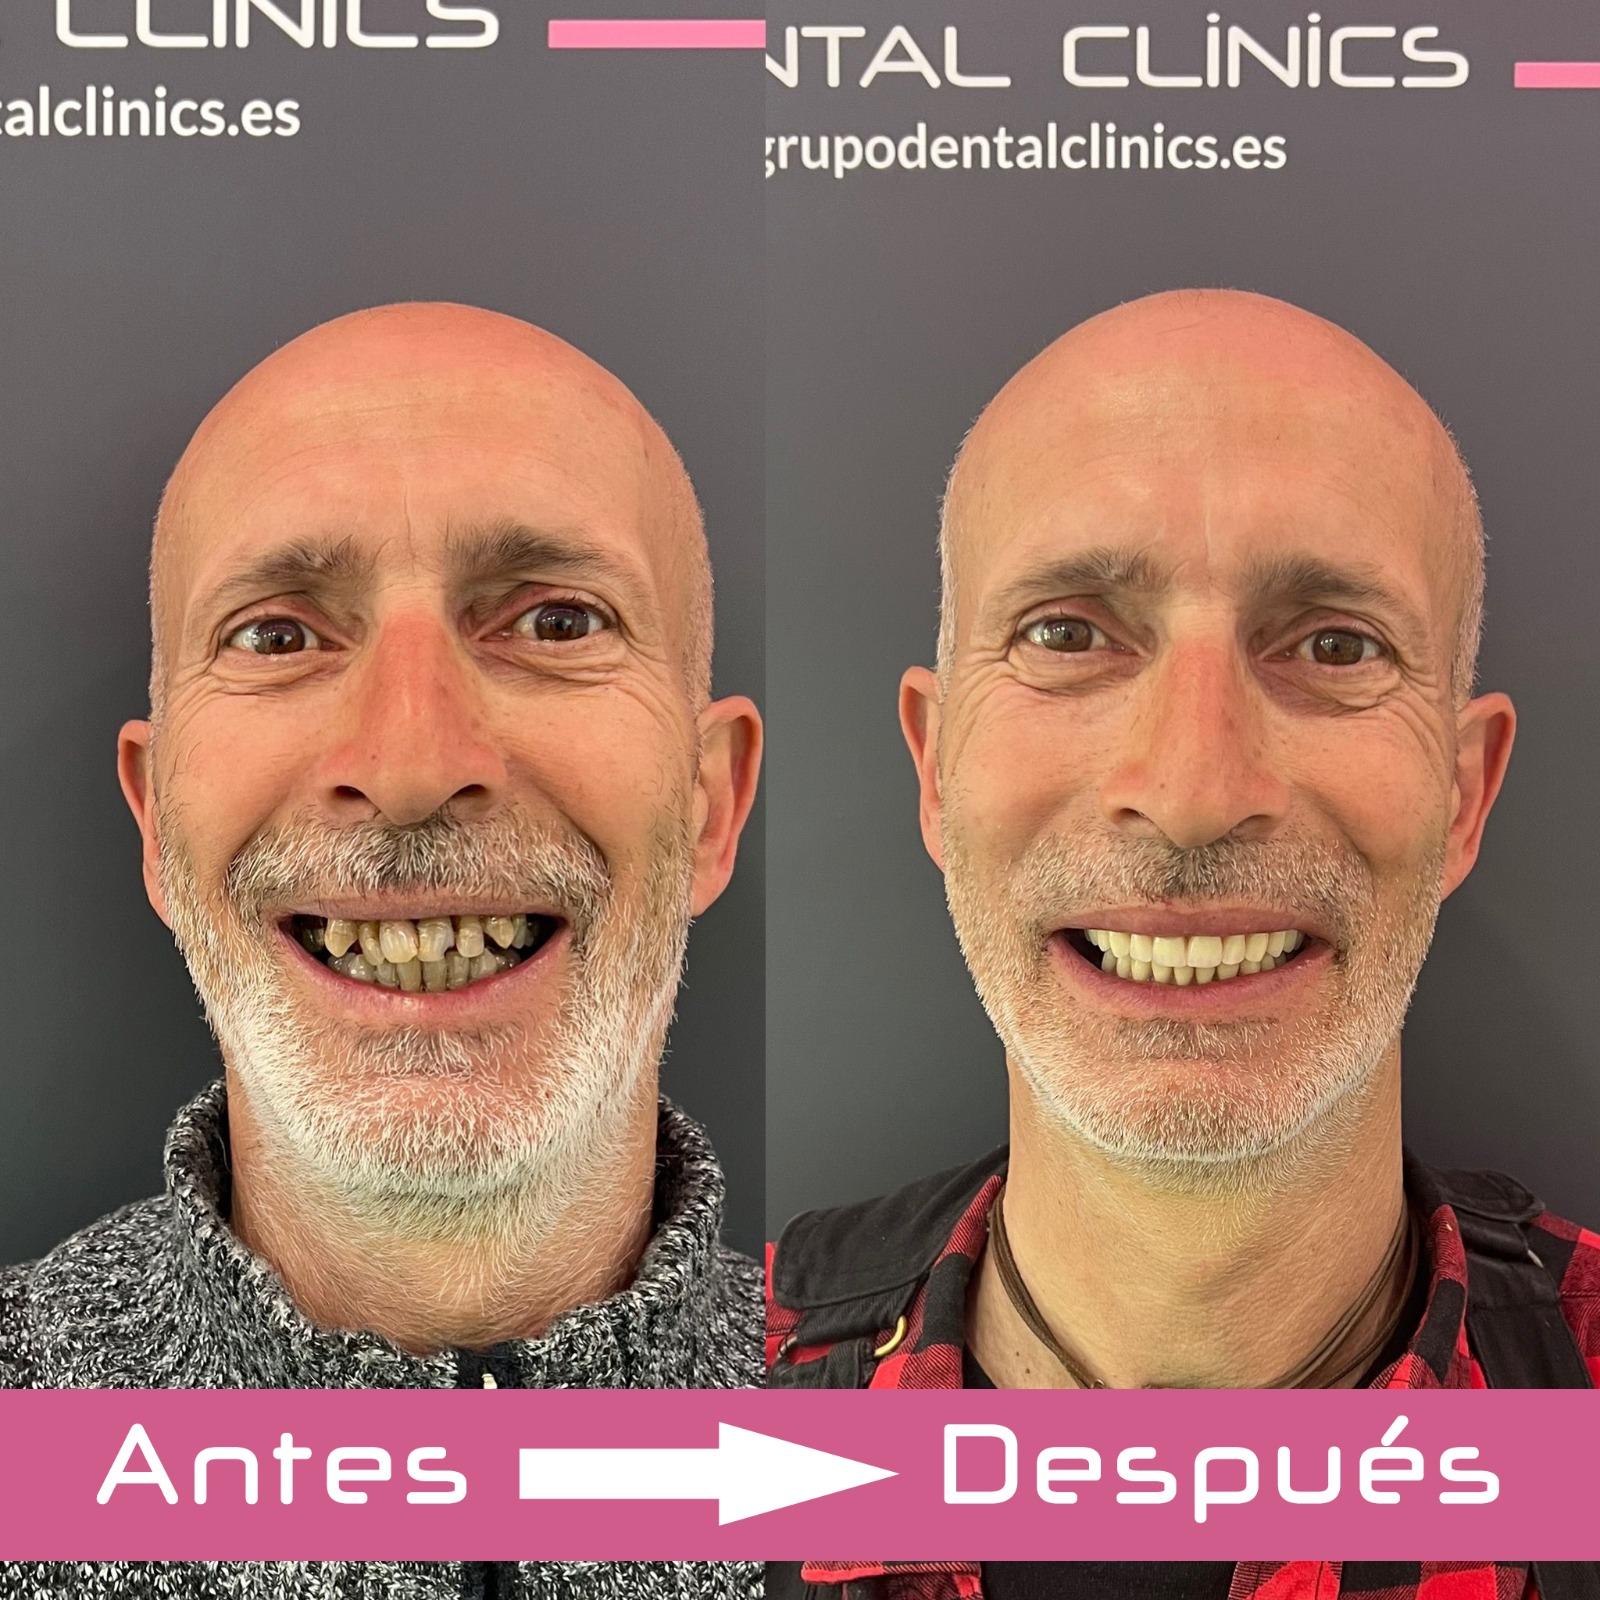 Cómo se pone un diente postizo provisional? - Clínica Dental en Granada